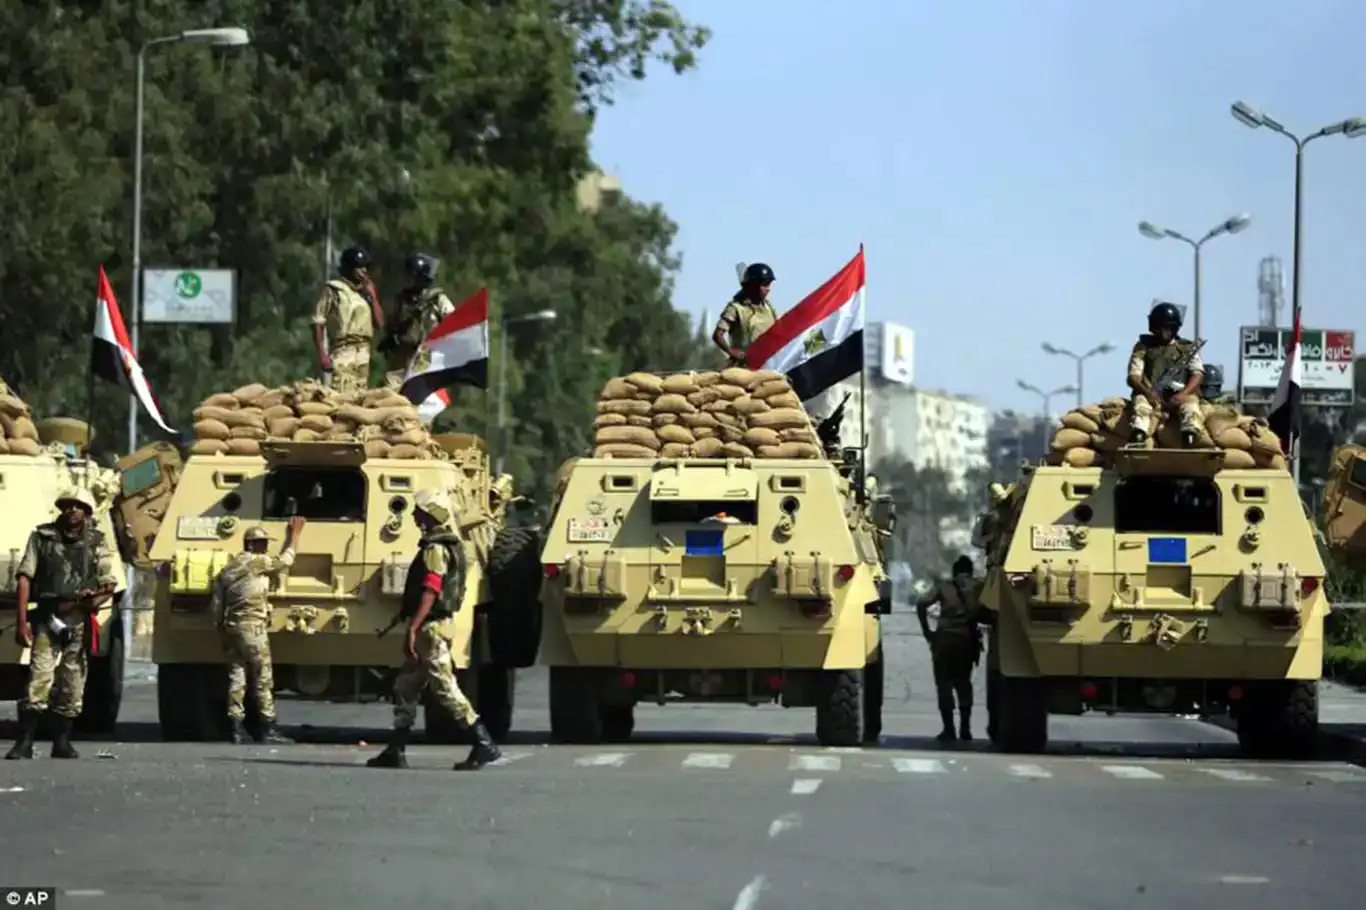 بدعمٍ من الصهيونية والغرب.. انقلاب الثالث من يوليو بقعةٌ سوداء في تاريخ مصر 